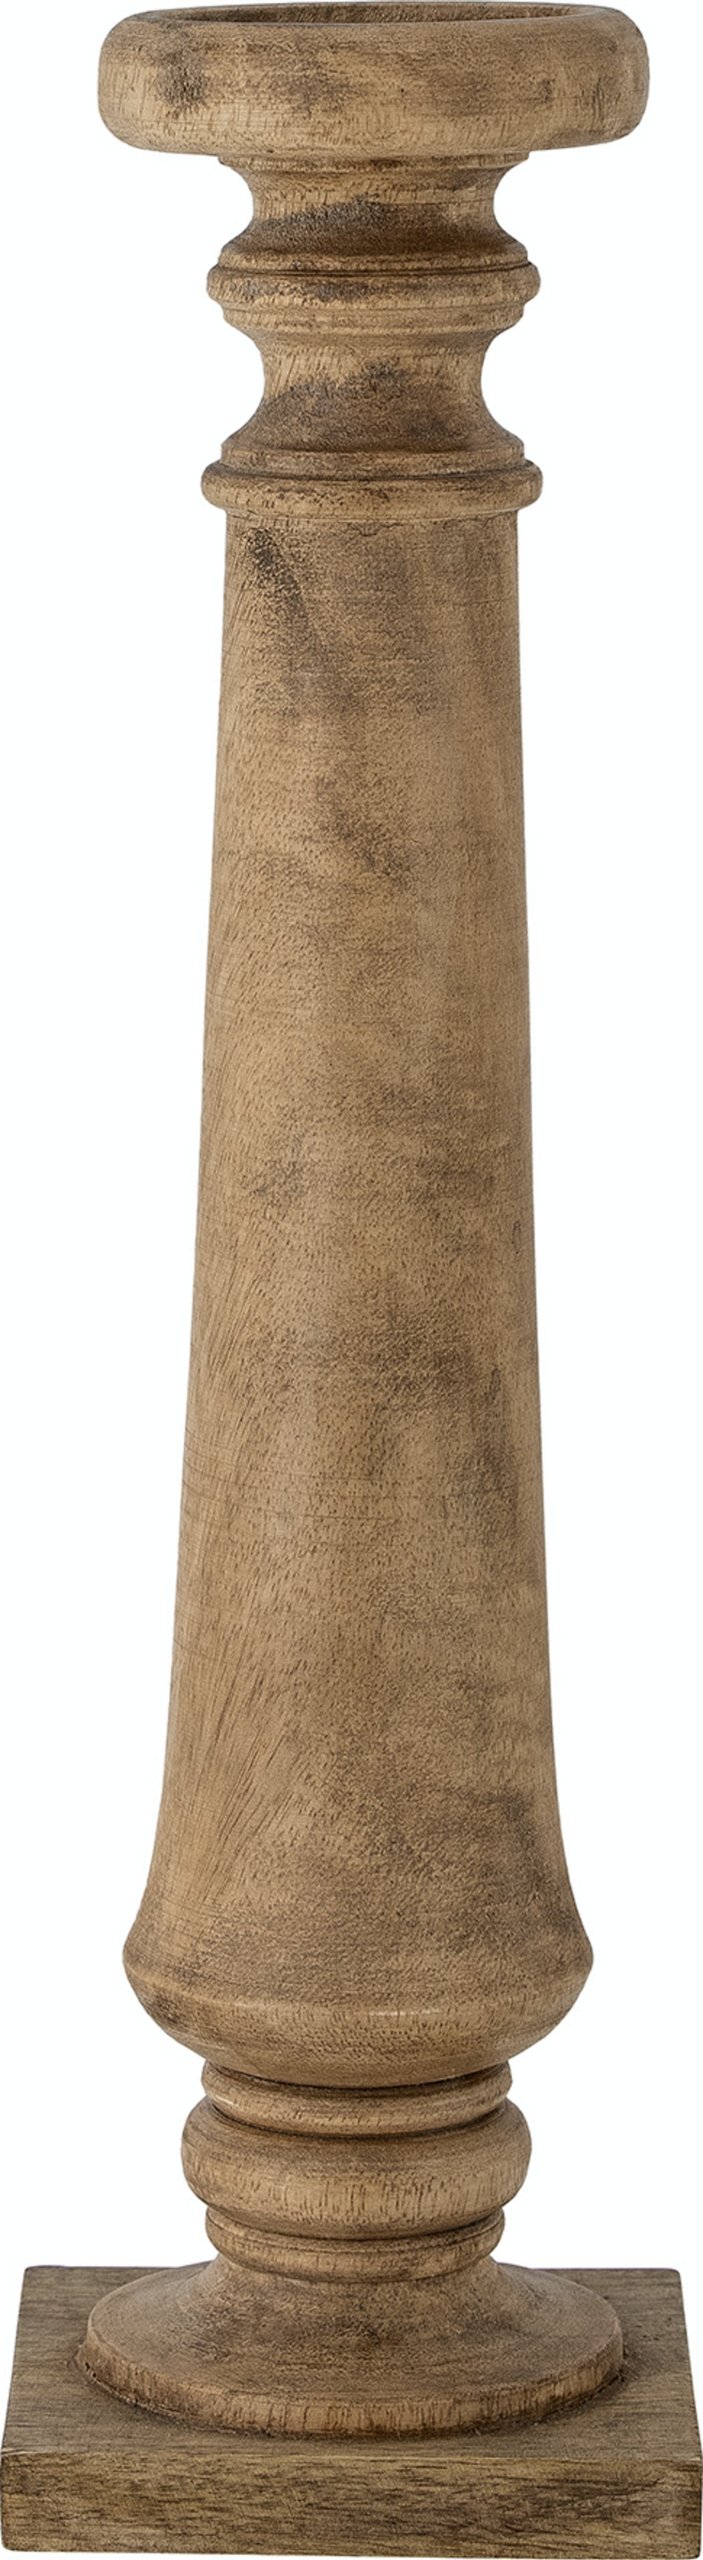 15: Noore, Piedestal, Mangotræ by Bloomingville (H: 46 cm. x B: 13 cm. x L: 13 cm., Natur)